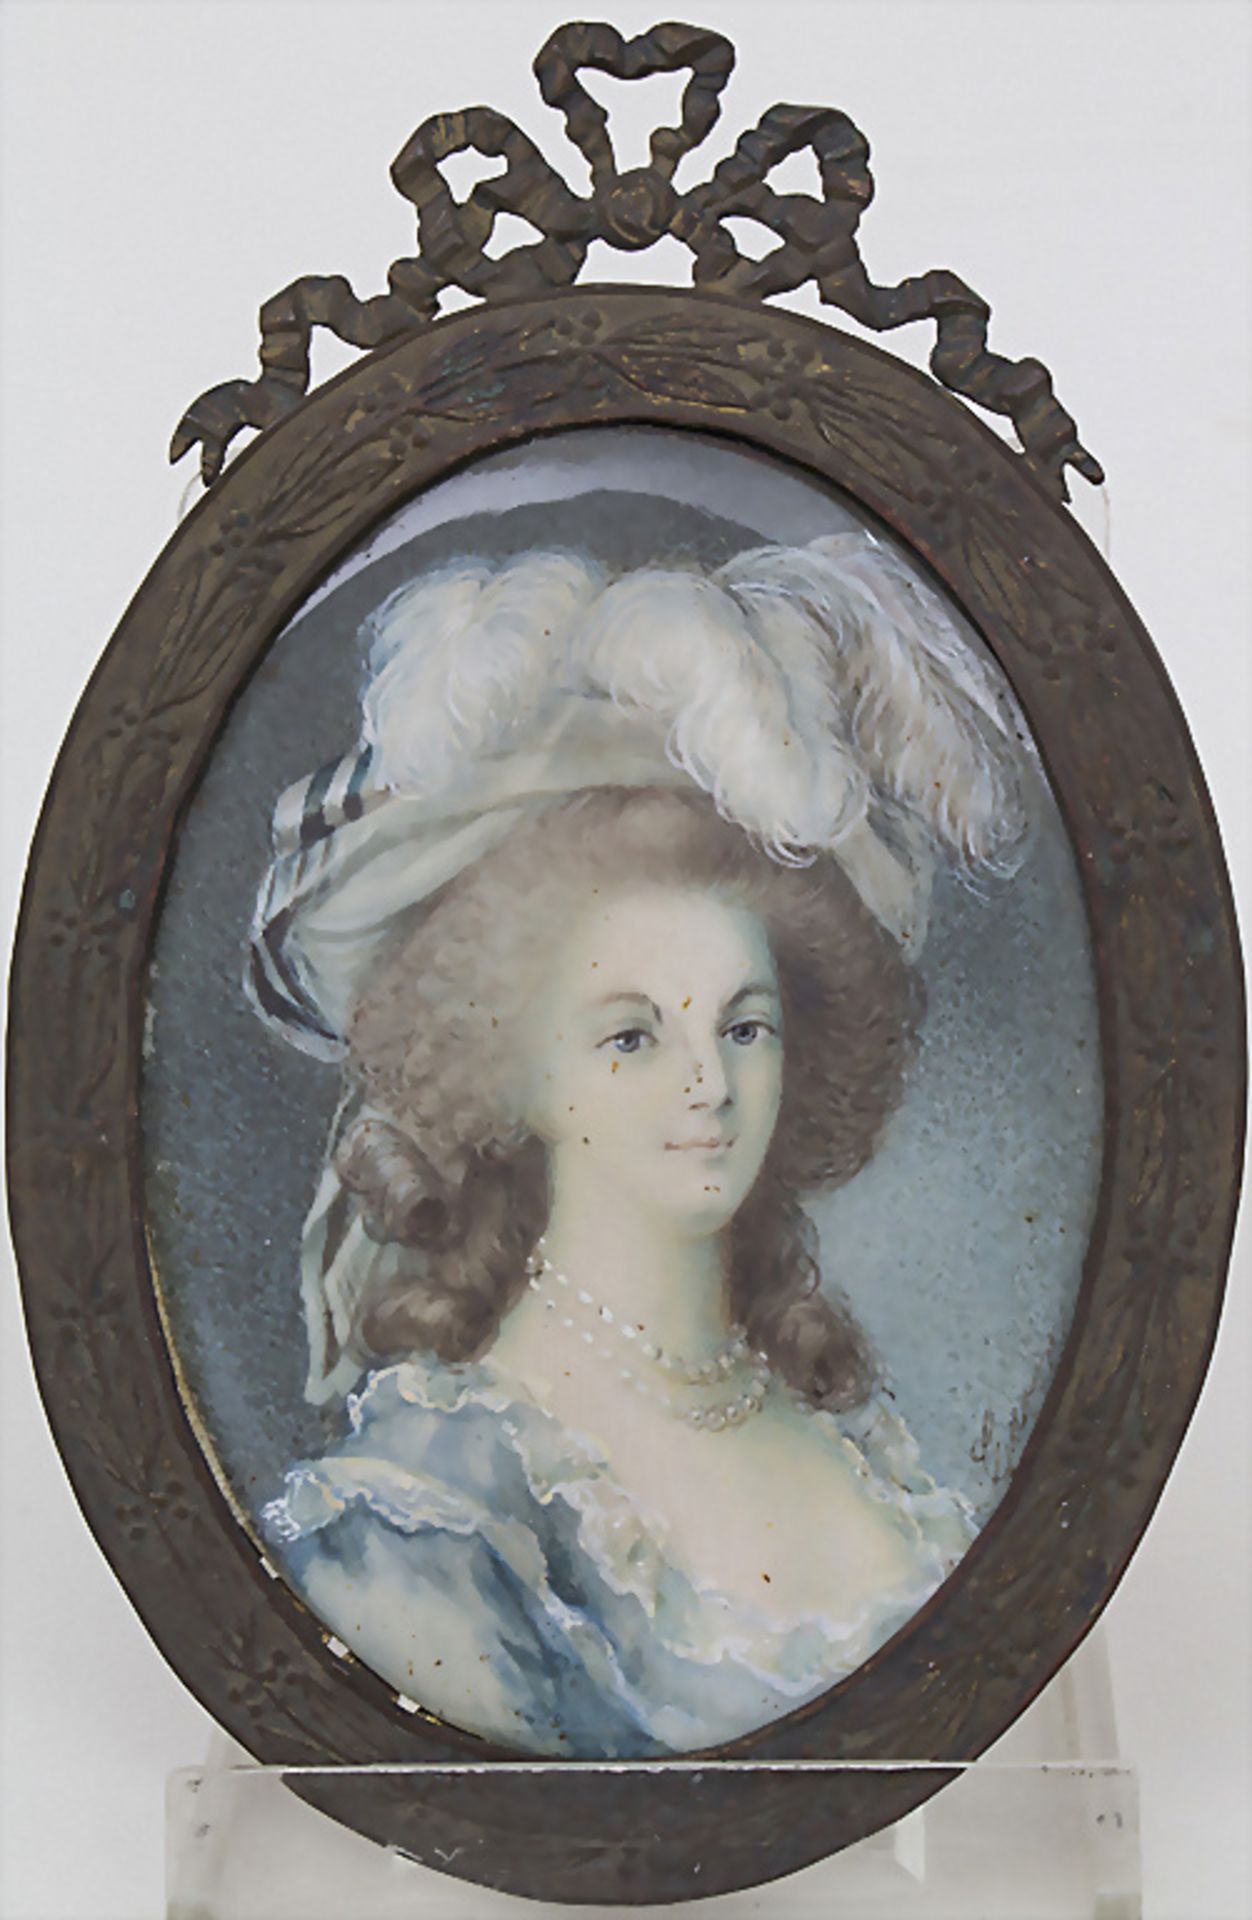 Biedermeier Miniatur Porträt 'Marie Antoinette' / An Empire miniature portrait of Marie ...